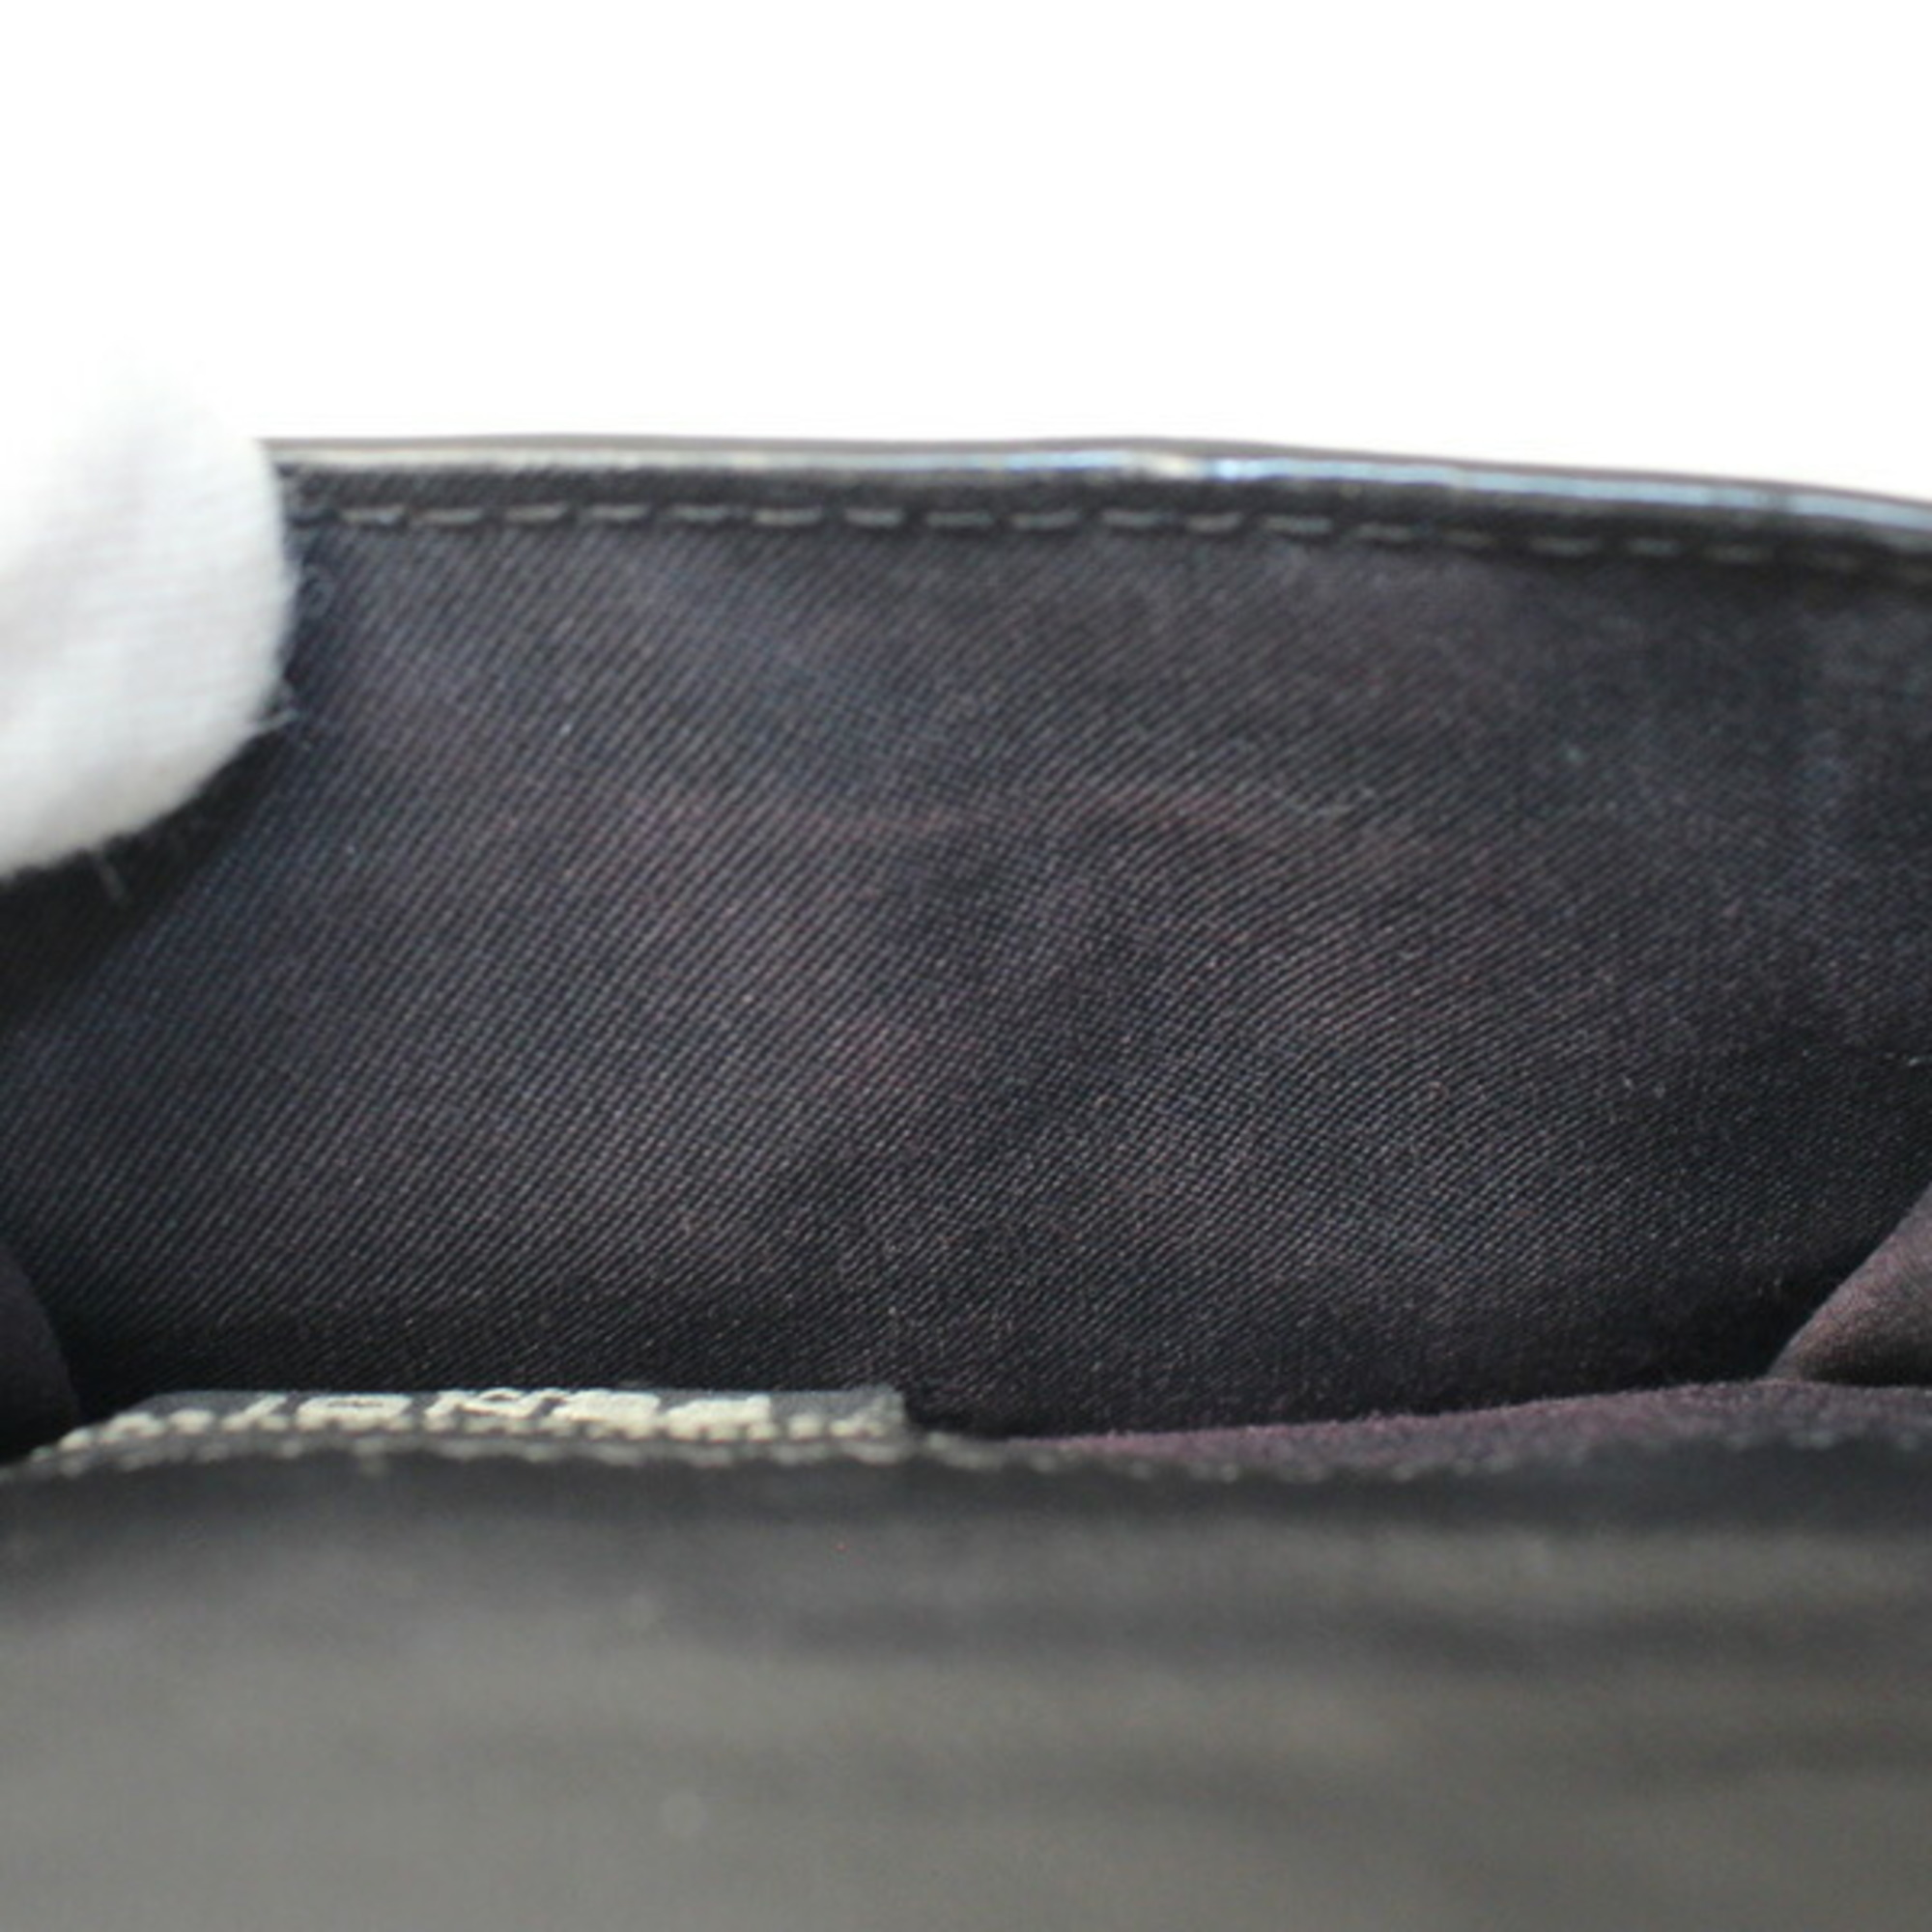 FENDI Micro Trifold Wallet Black Nappa Leather 8M0395 AAJD F0KUR